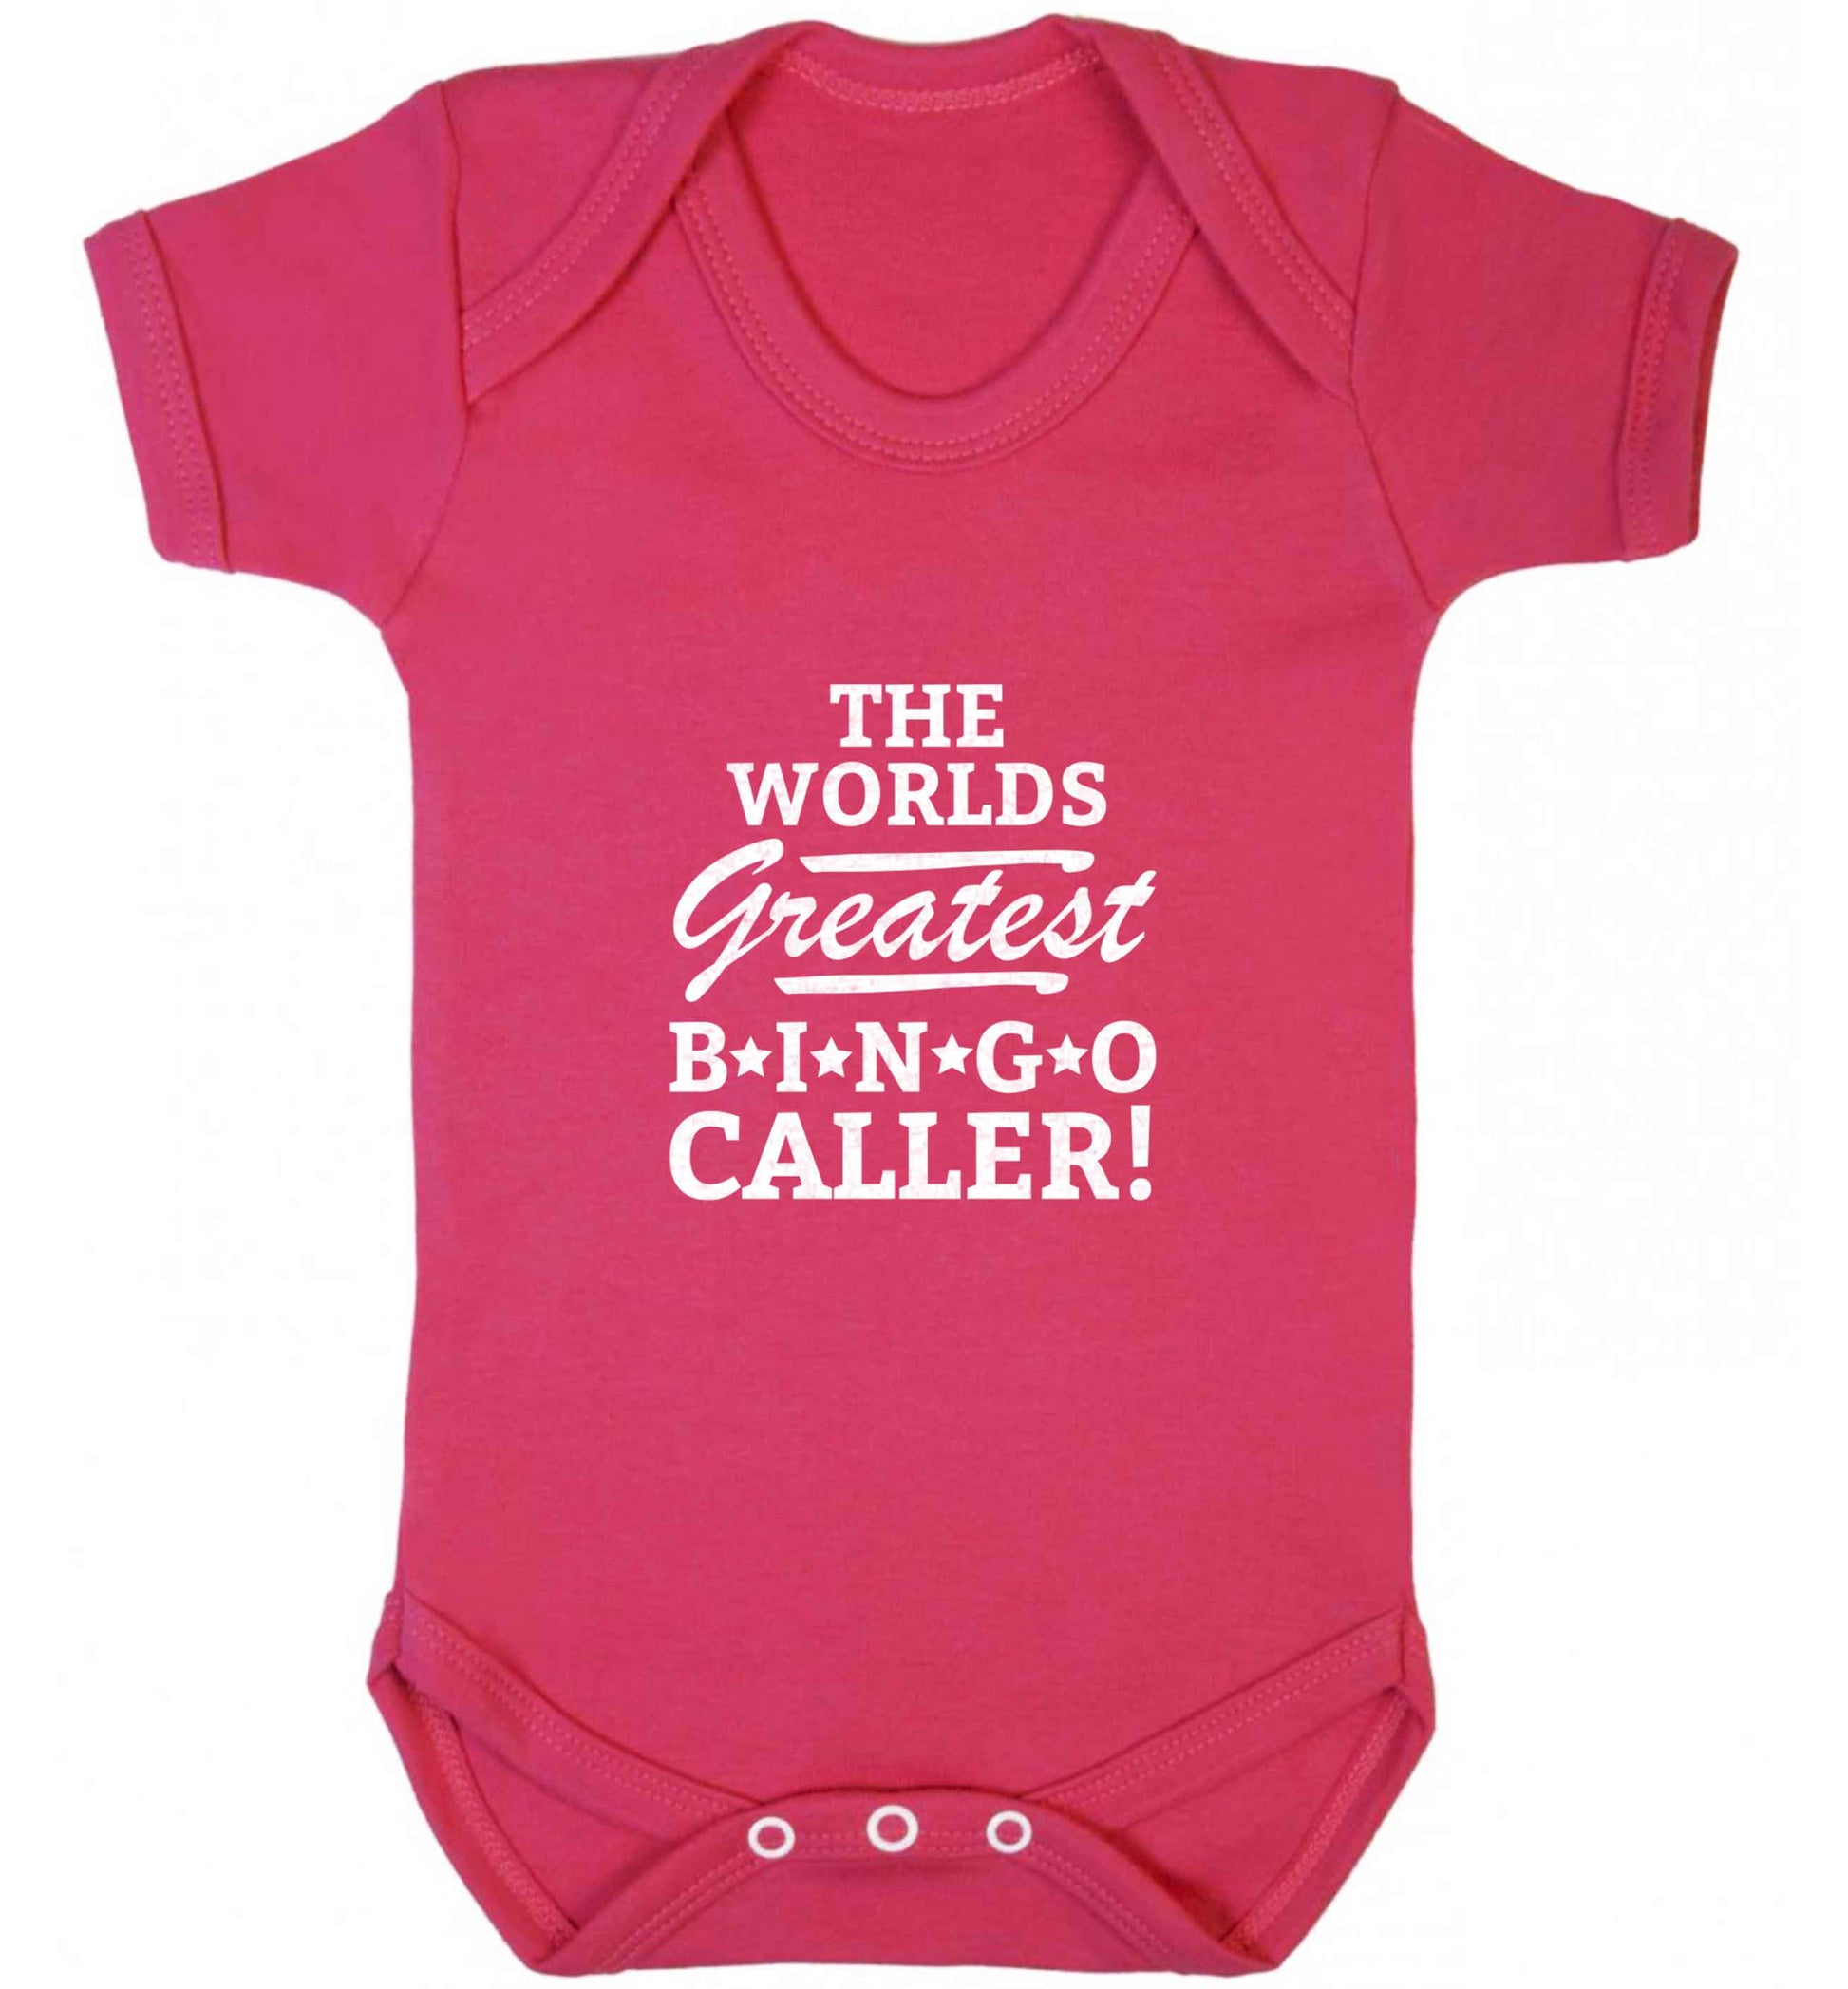 Worlds greatest bingo caller baby vest dark pink 18-24 months